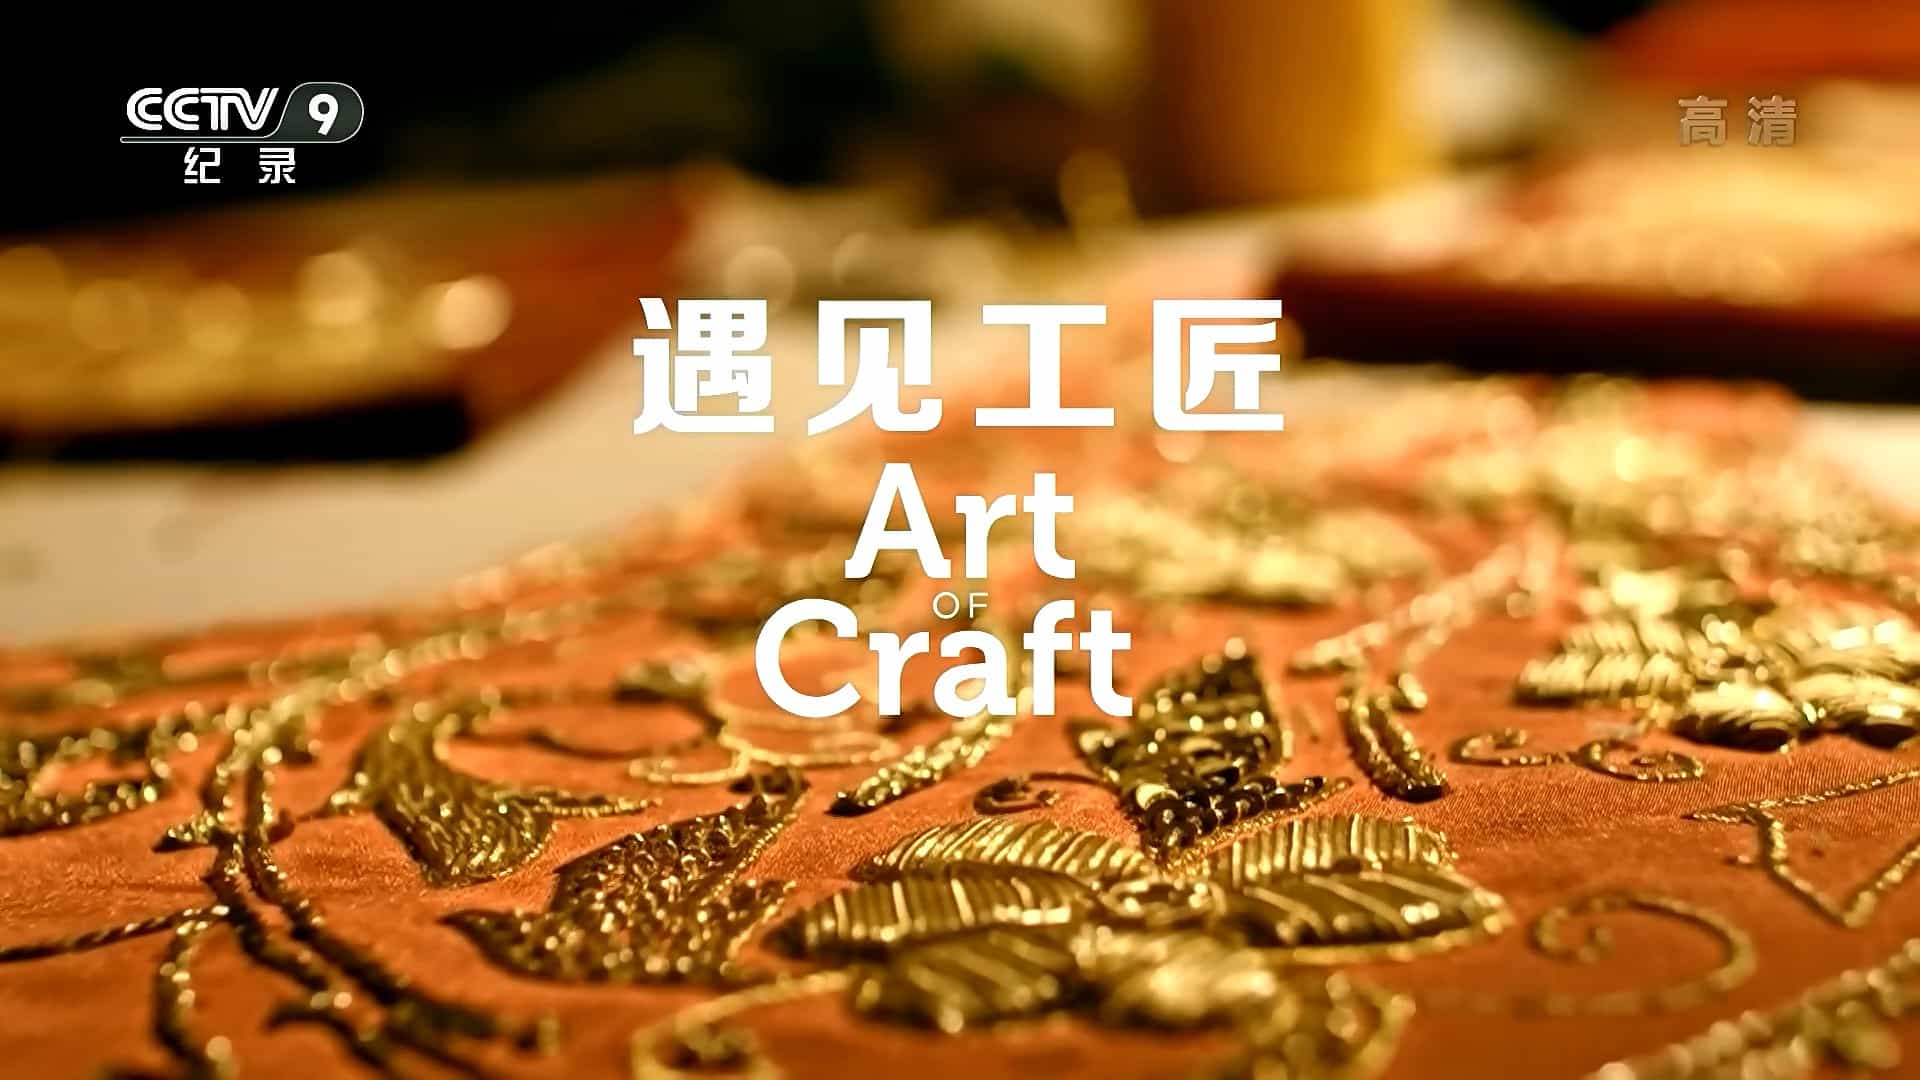  央视纪录片《遇见工匠 Art of Craft 2020》全5集 国语中字 1080i高清下载